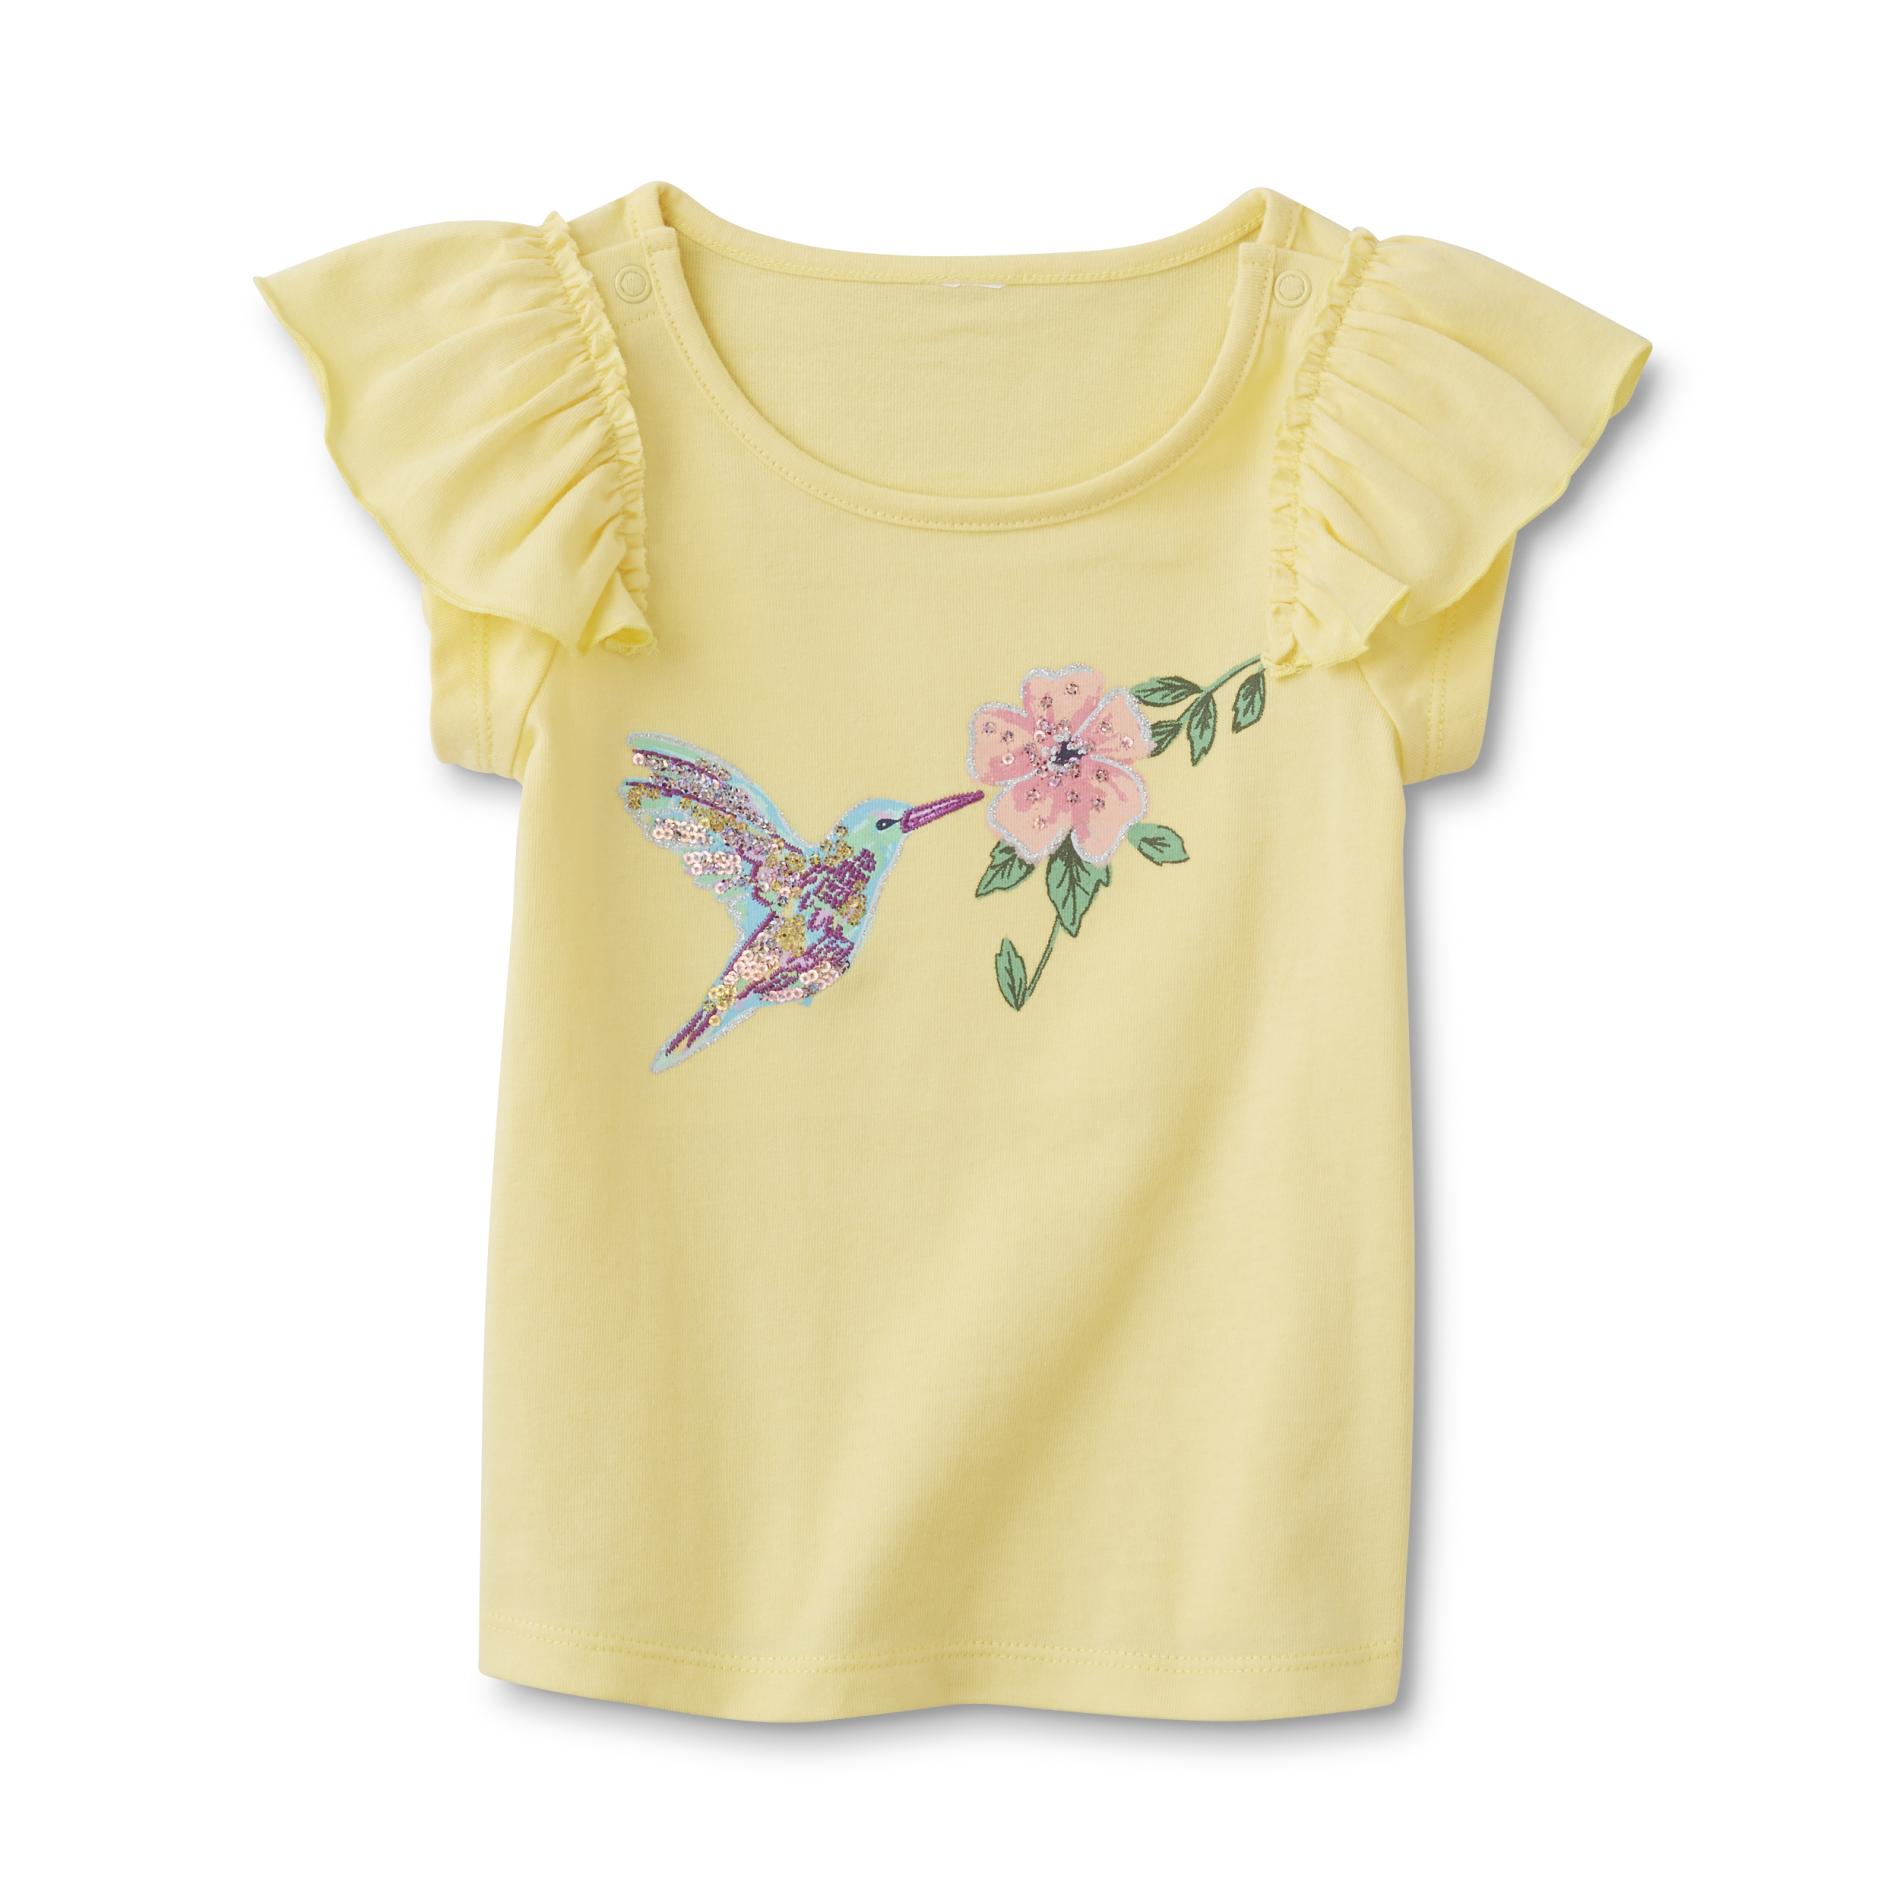 Toughskins Infant & Toddler Girls' Flutter Top - Hummingbird